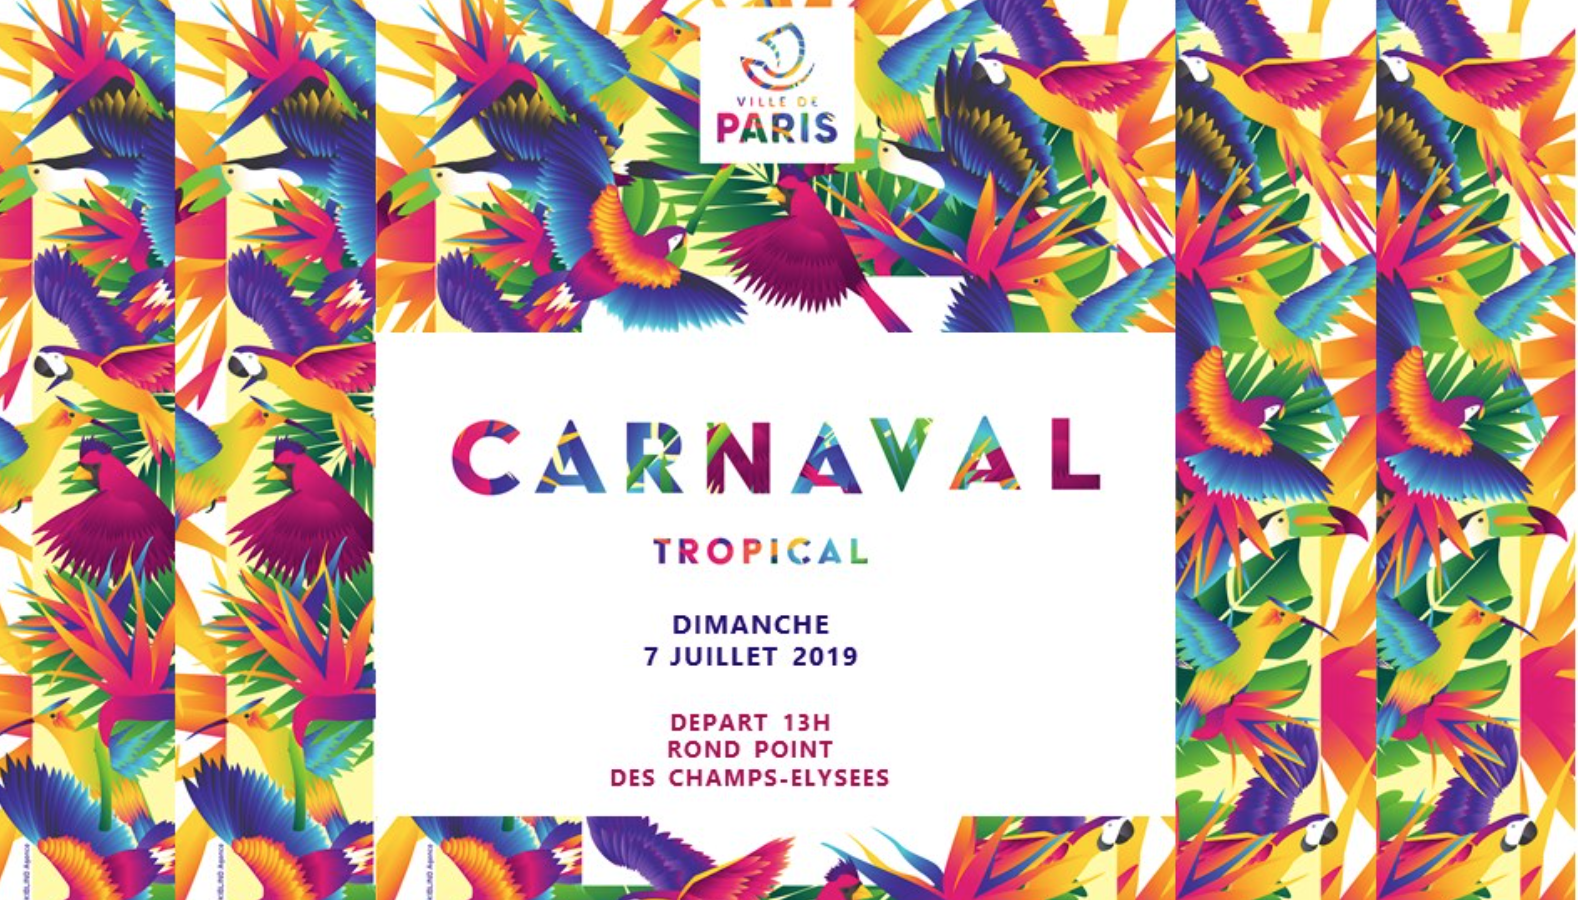 Le Carnaval Tropical de Paris réinvestit les Champs-Elysées pour sa 18ème édition